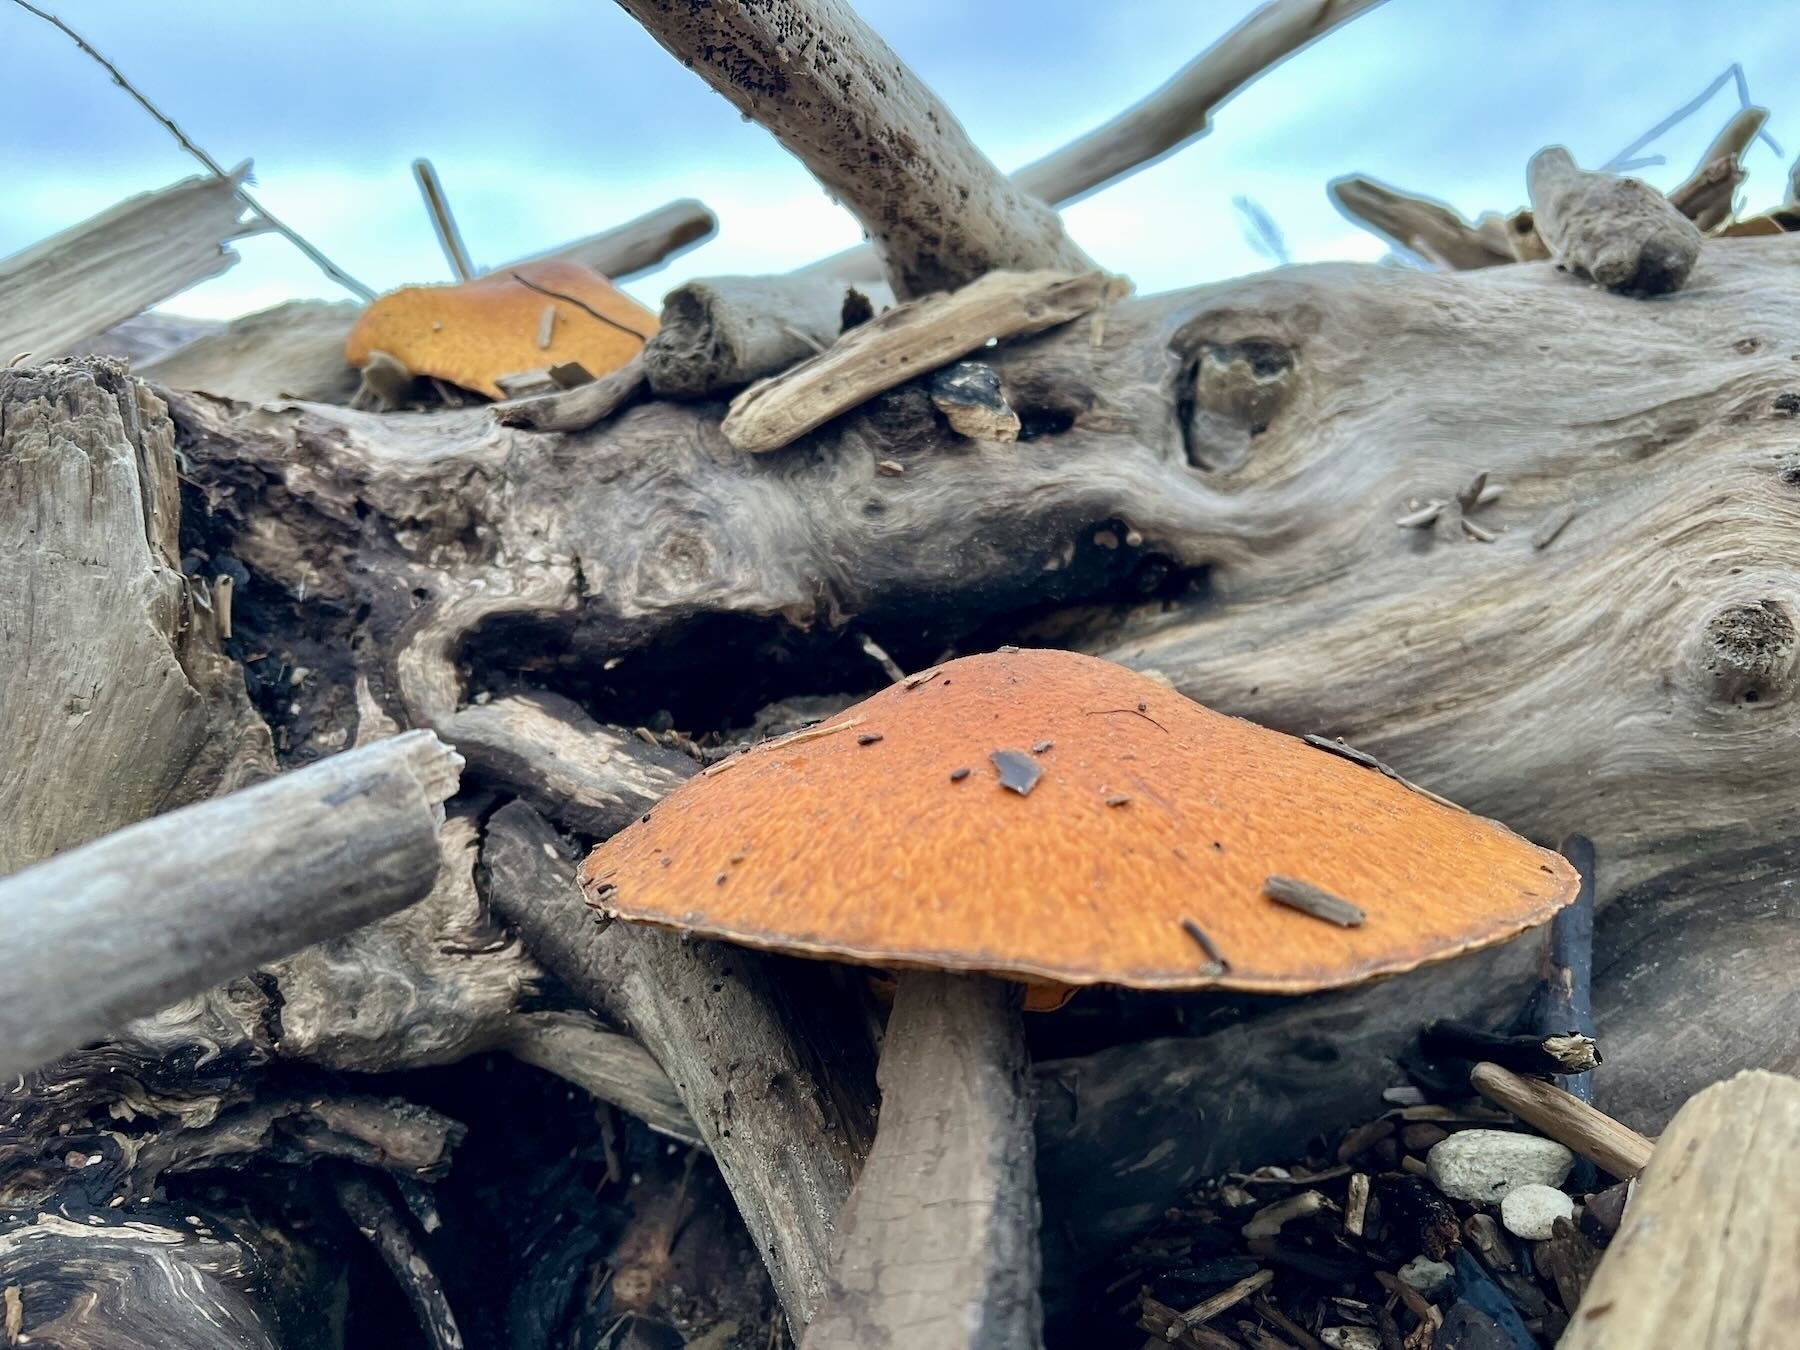 Two large Orange fungi on driftwood. 